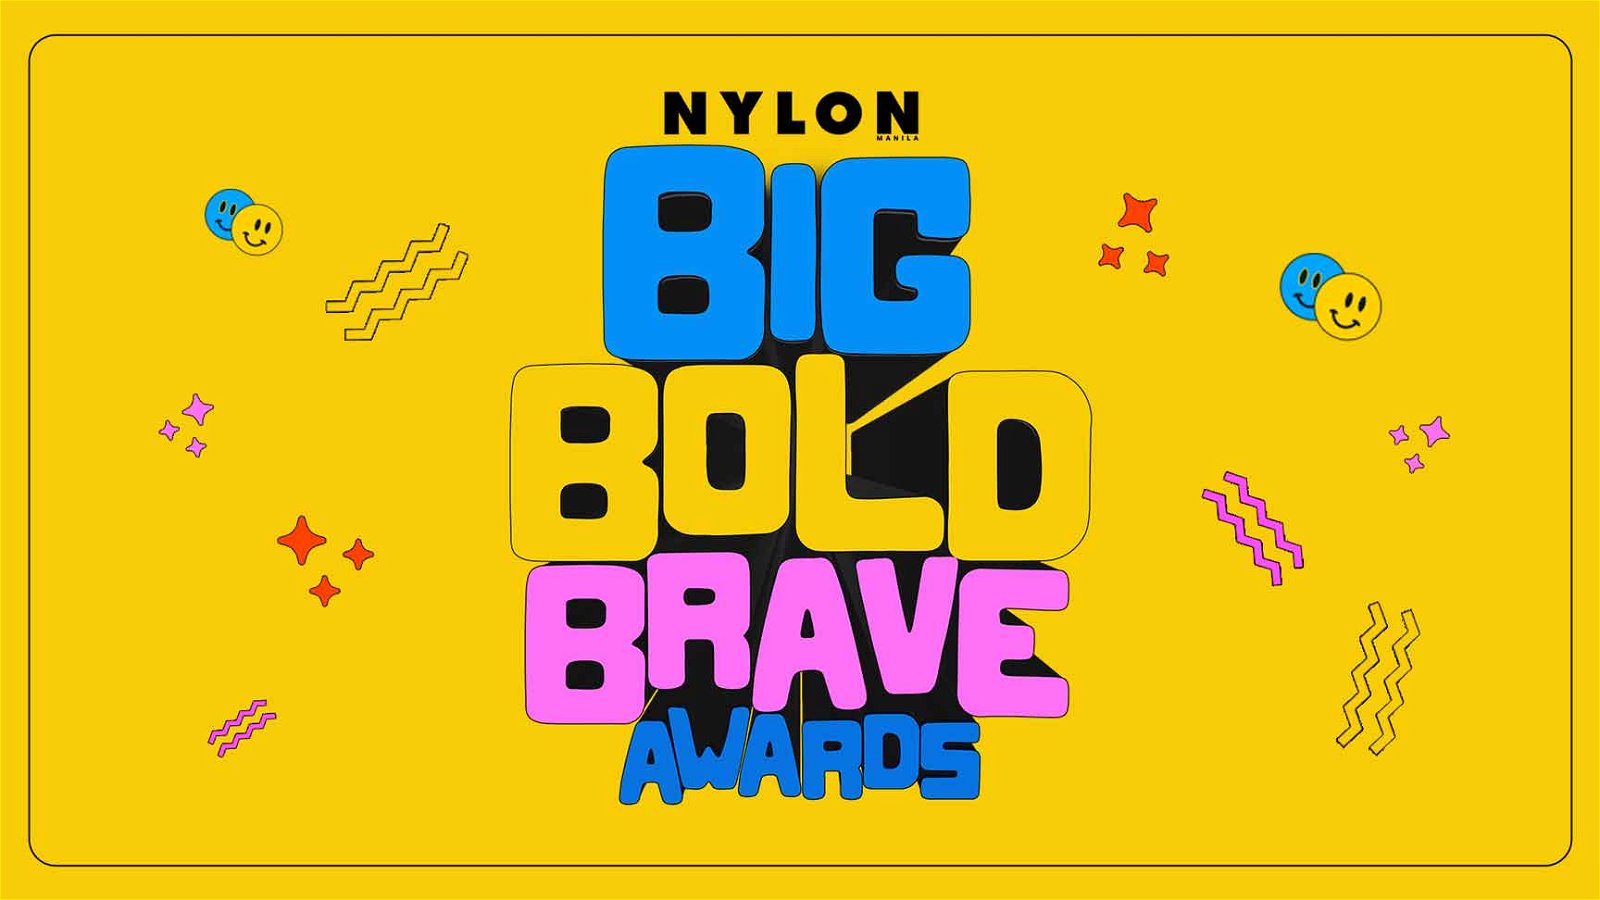 Big, Bold, Brave Awards Banner